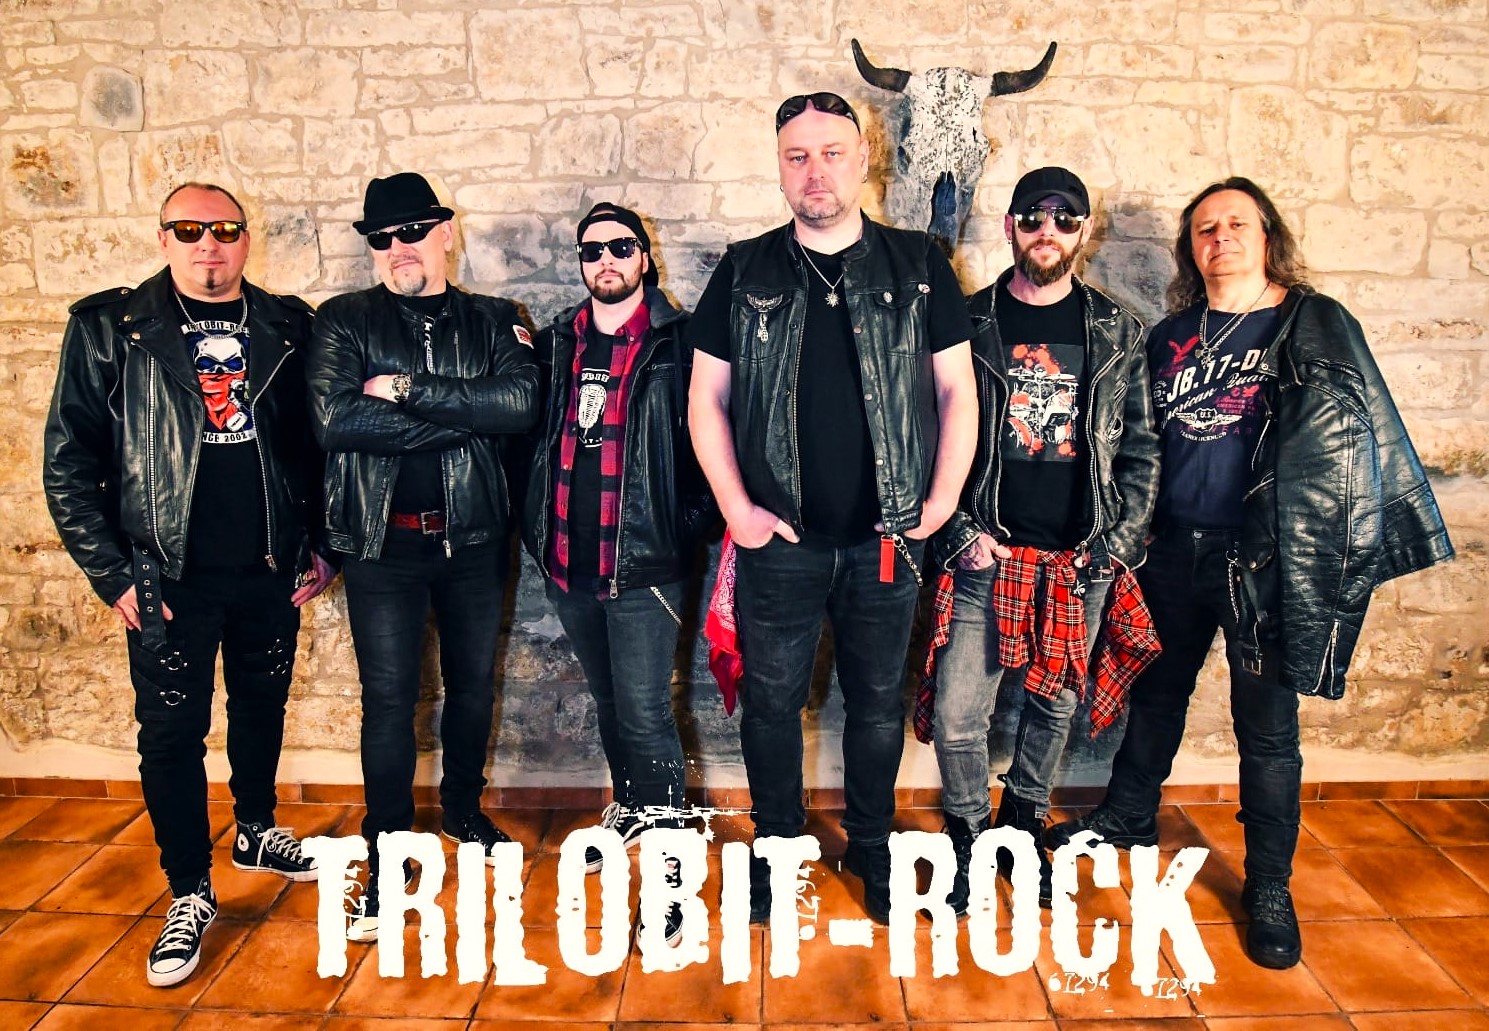 Trilobit -Rock chystá nové album